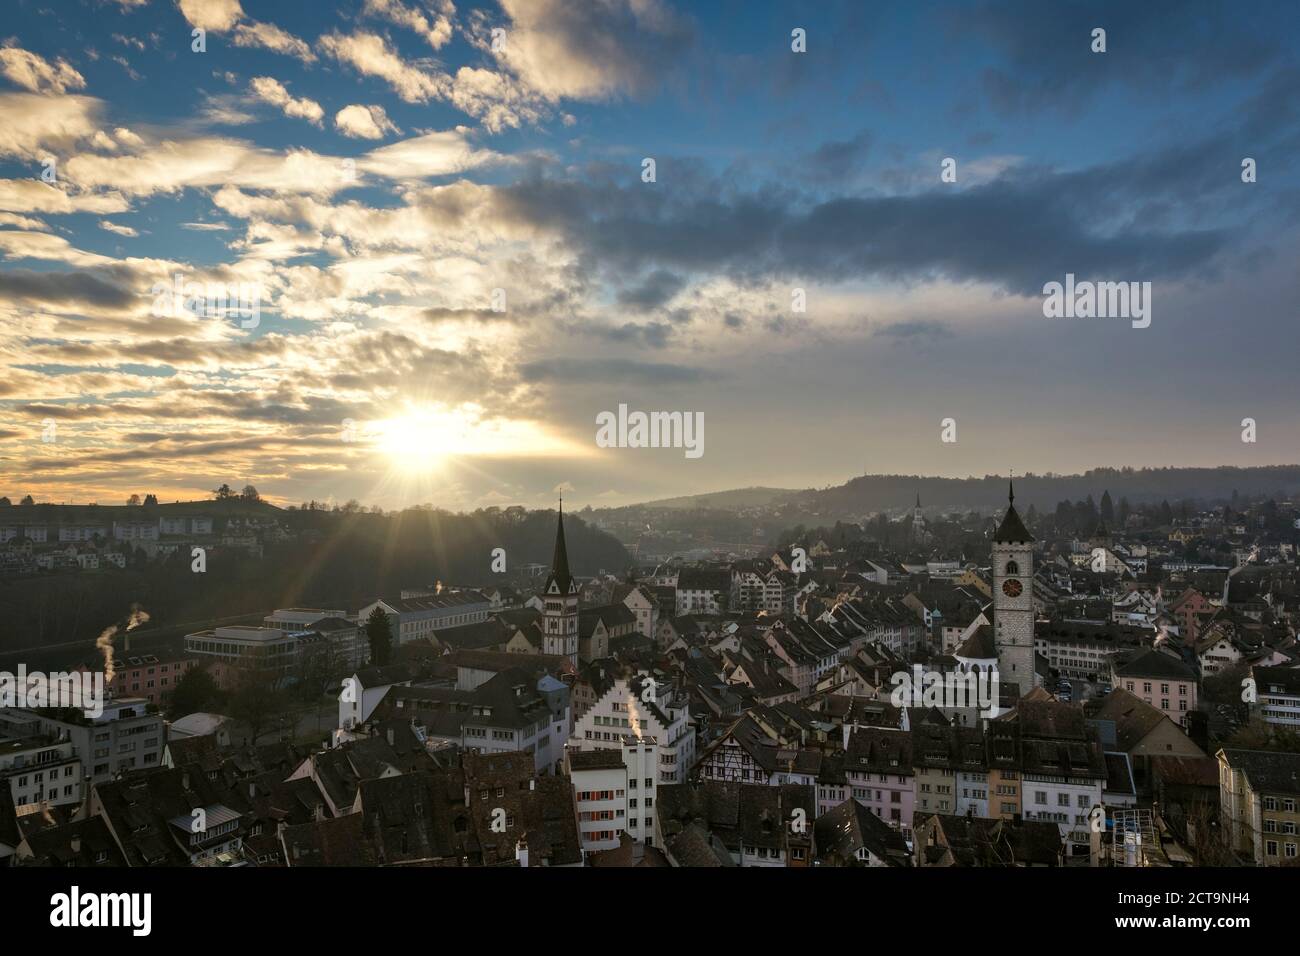 Switzerland, Canton of Schaffhausen, Schaffhausen, old town at evening mood Stock Photo